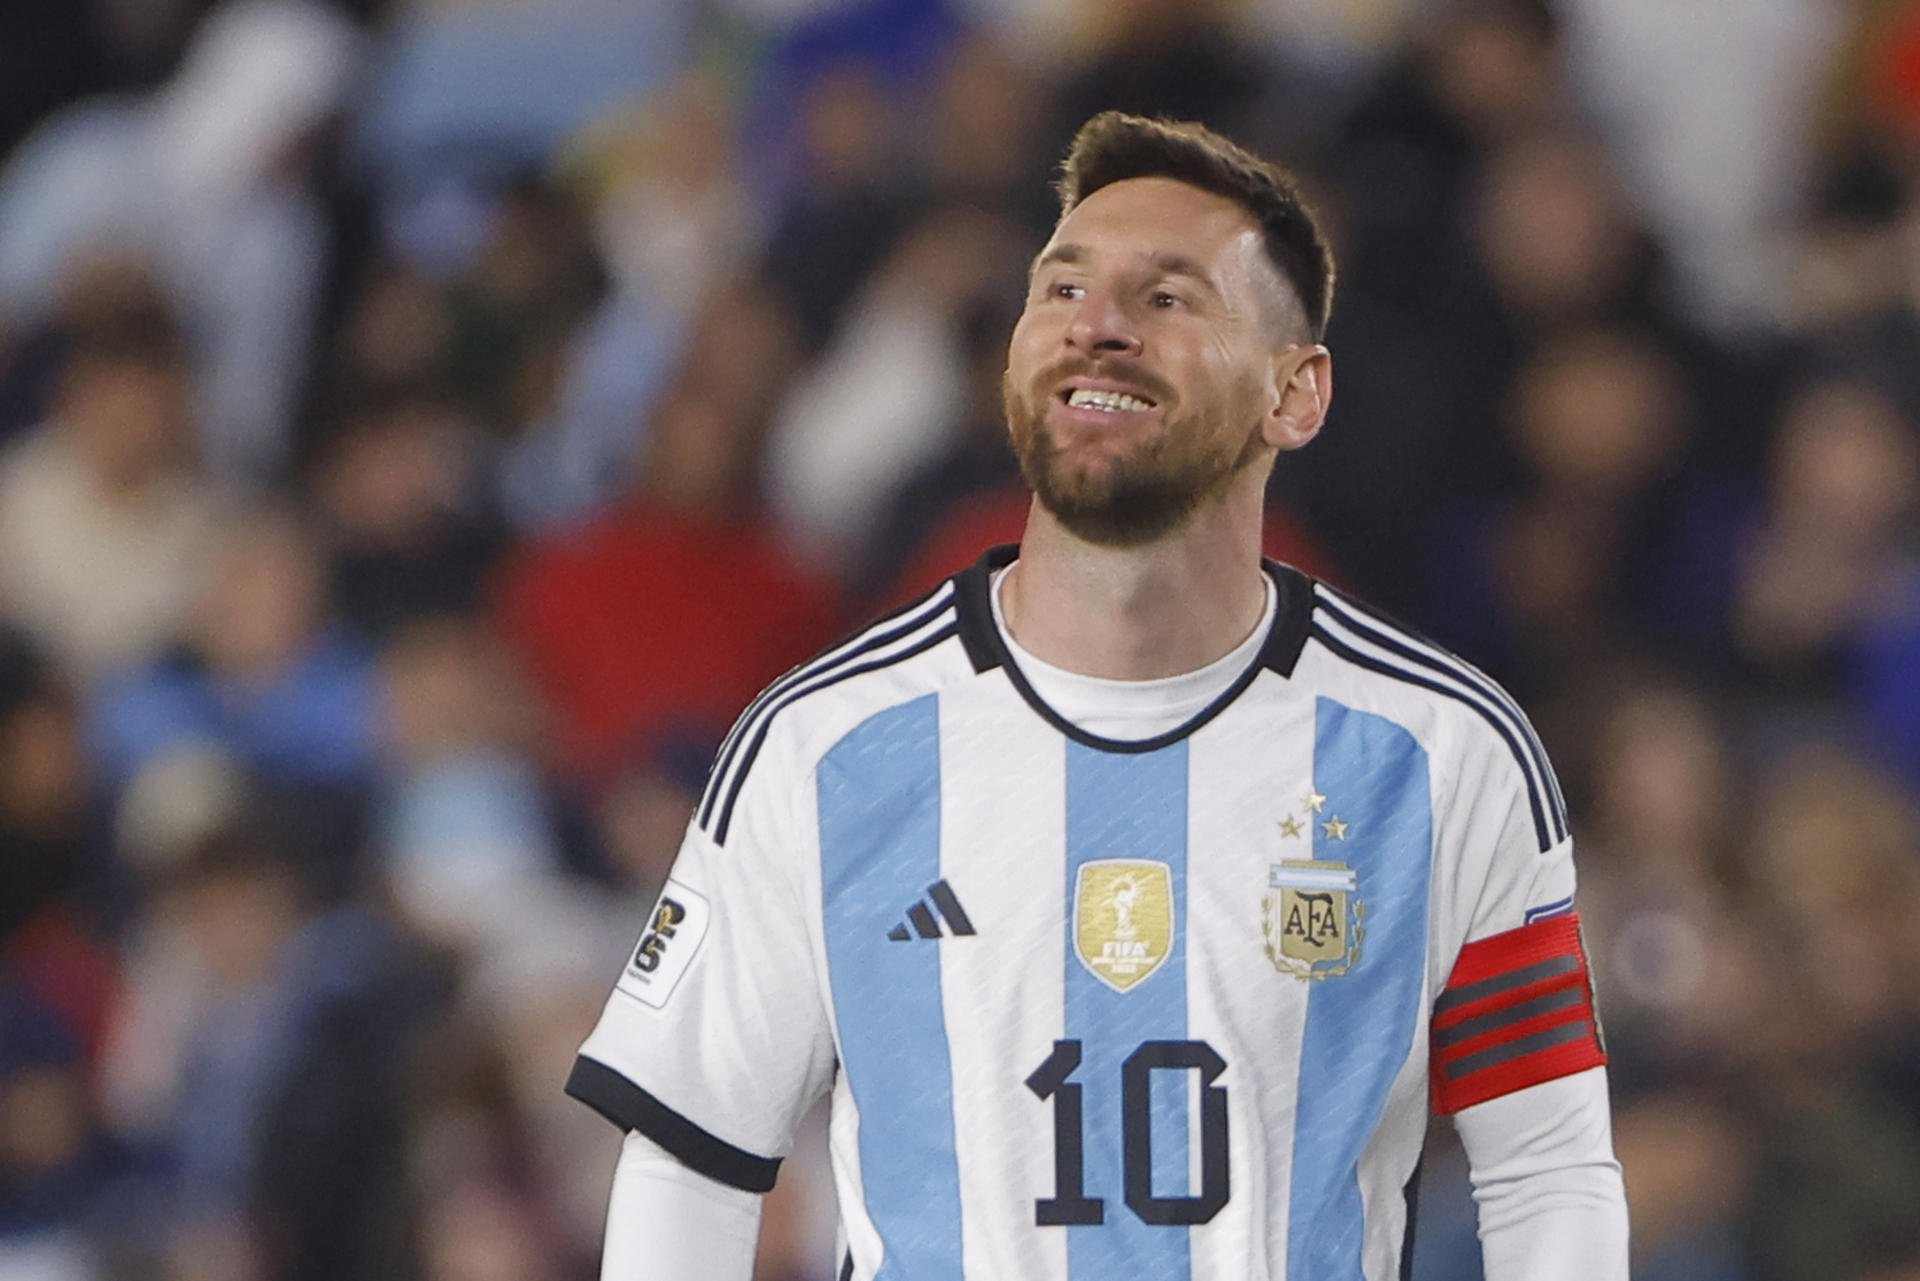 La IA coloca a Messi como el tercer mejor jugador de fútbol de la historia